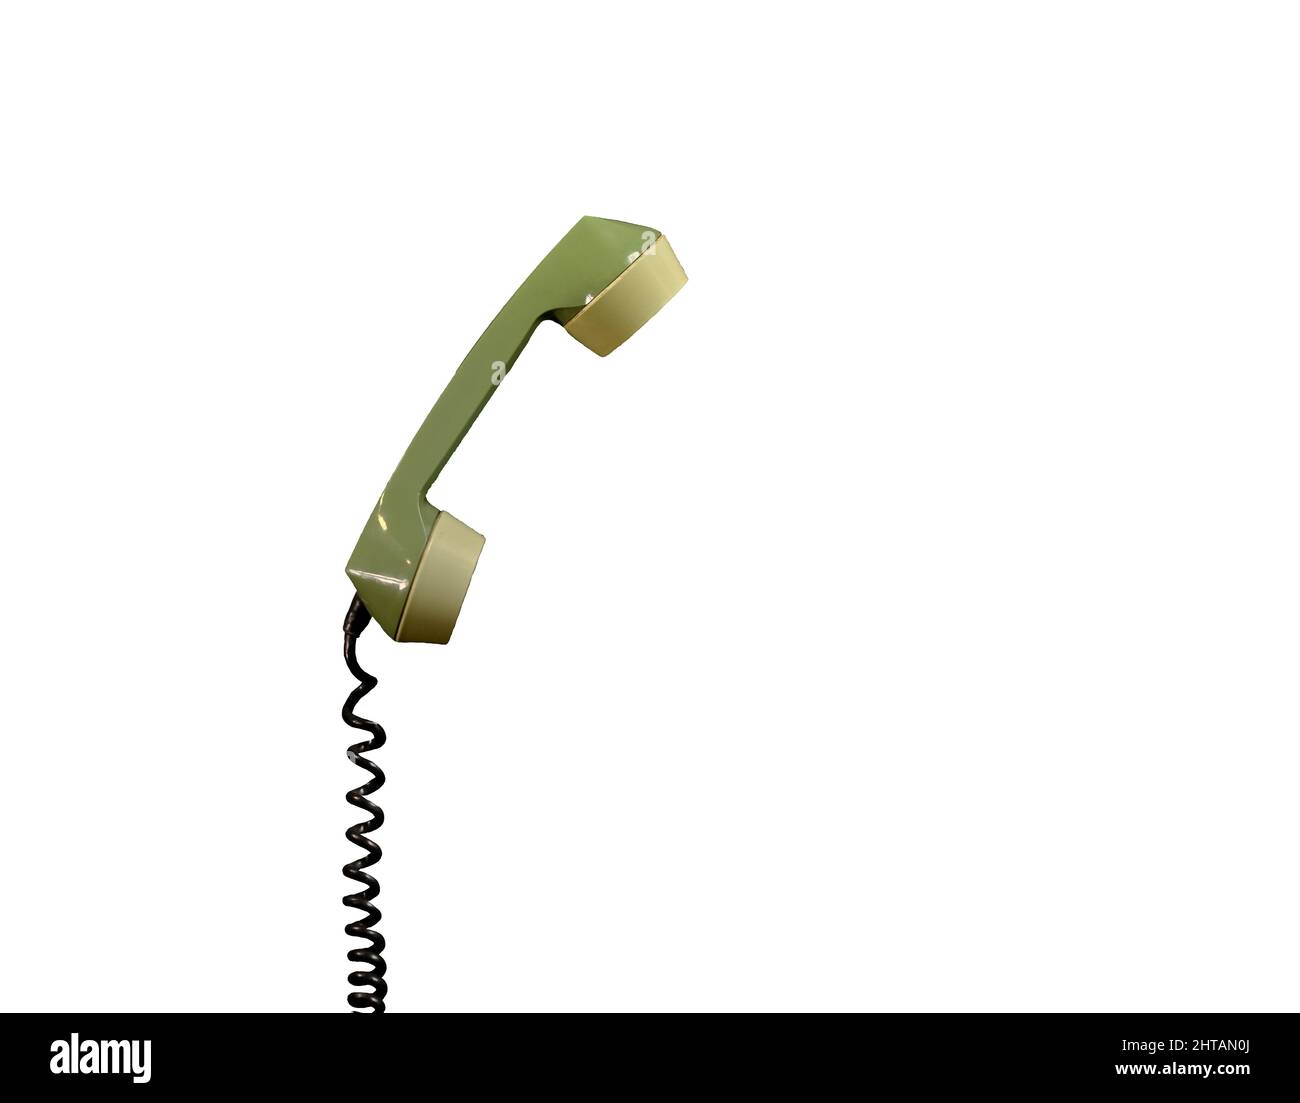 el receptor de teléfono de un antiguo teléfono retro. aislado sobre fondo blanco Foto de stock